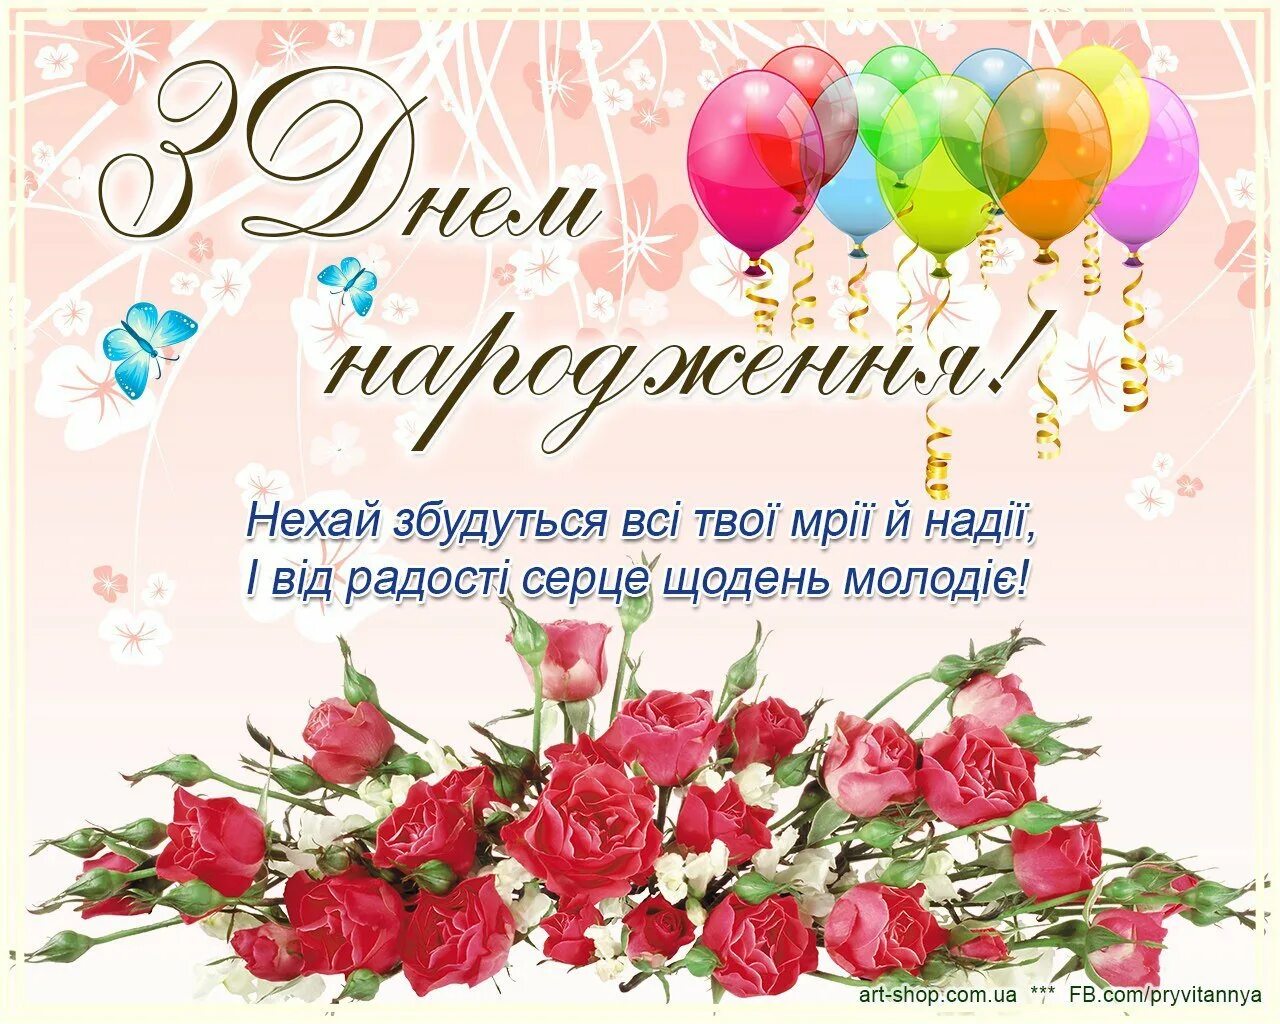 Поздравить с днем рождения на украинском. Поздравления с днём рождения на украинском языке. Поздравления с днём рождения на украинском языке открытки. Поздравления с днём рождения женщине на украинском языке. Поздравленя с днём рождения на украинском языке.